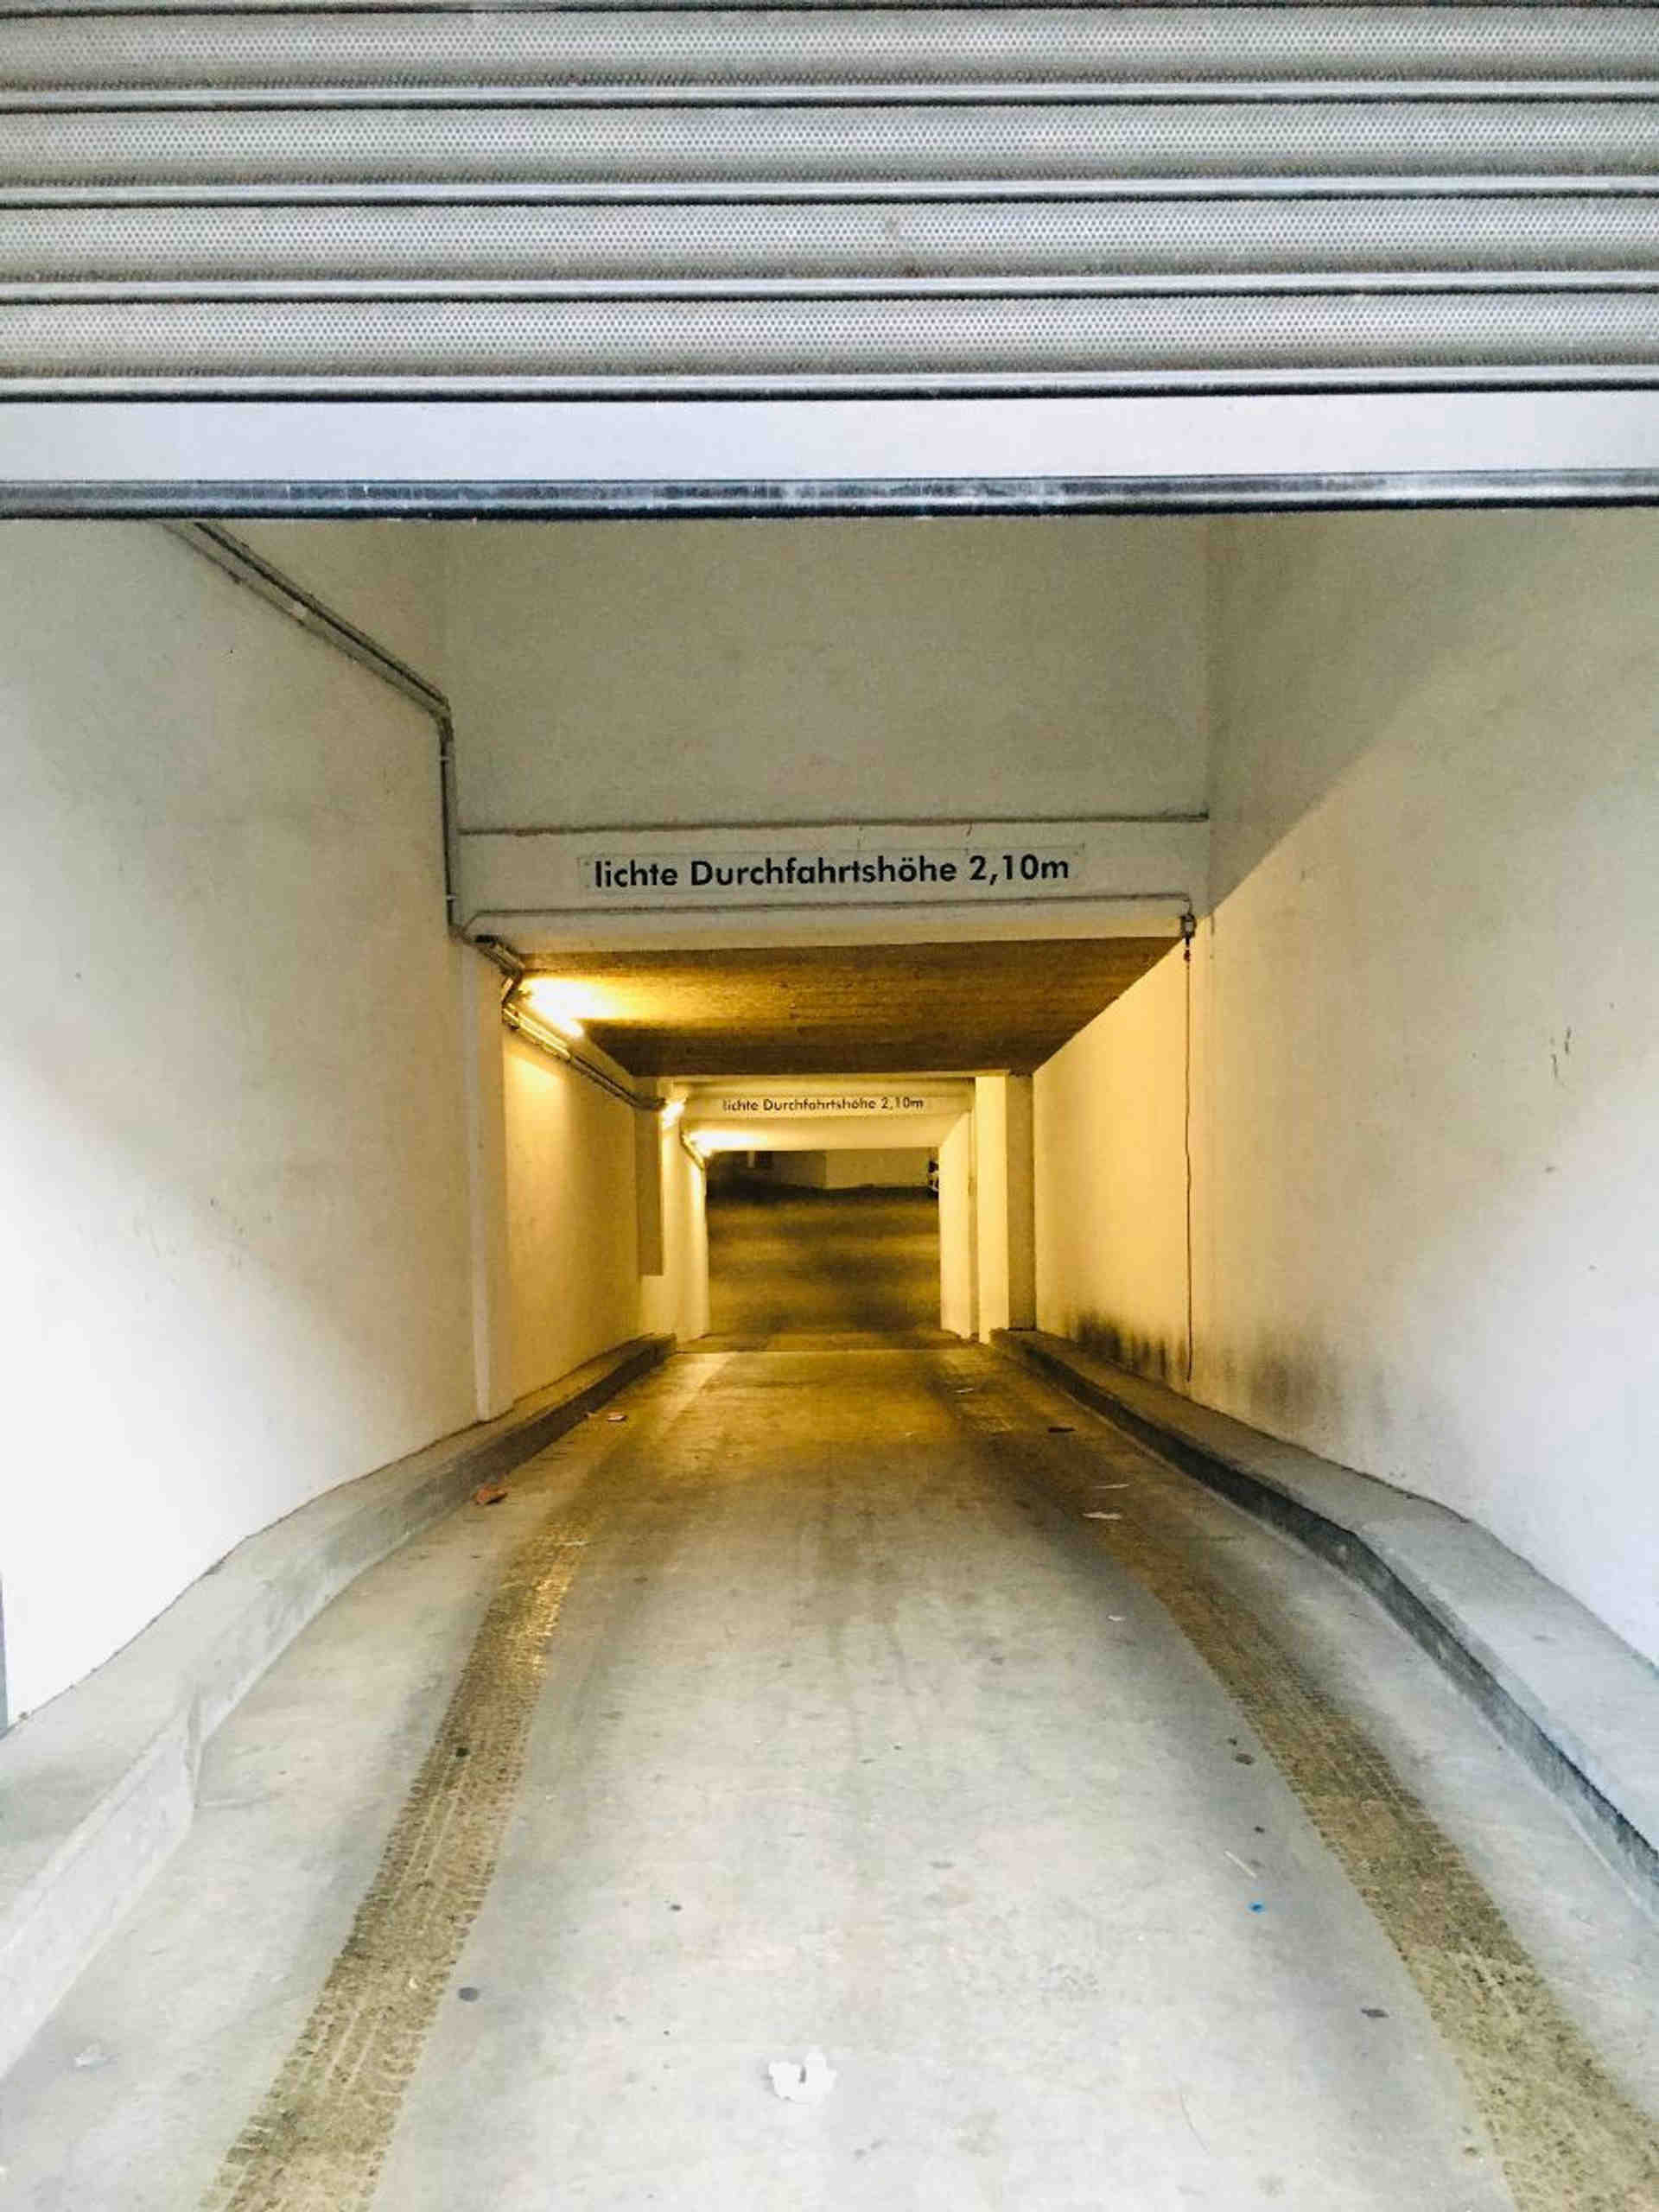 High-tech underground garage parking on Warschauerstrasse - Warschauer Straße, 10243 Berlin - Photo 3 of 4